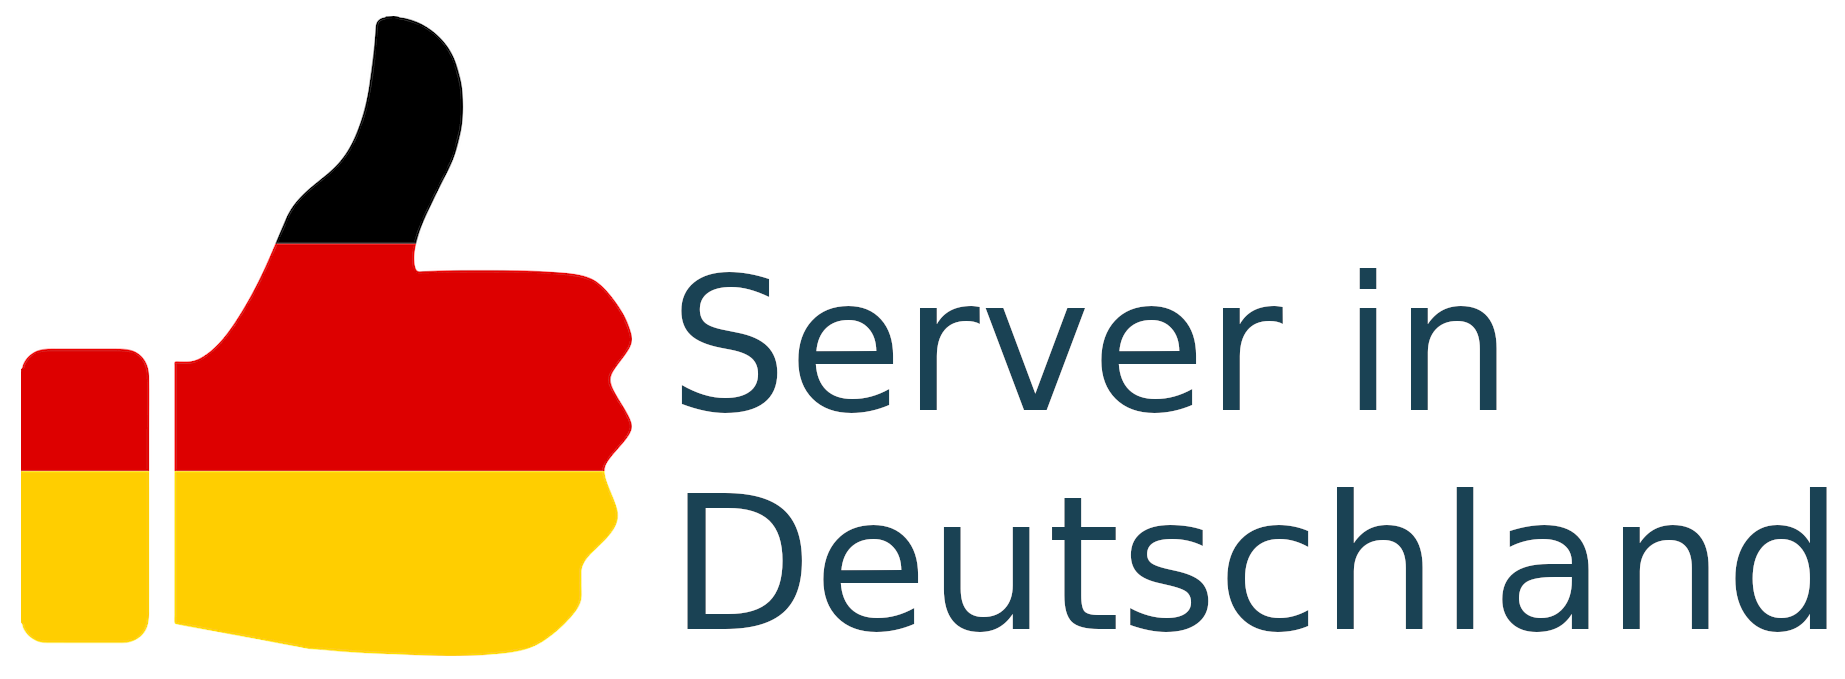 Server-in-Deutschland